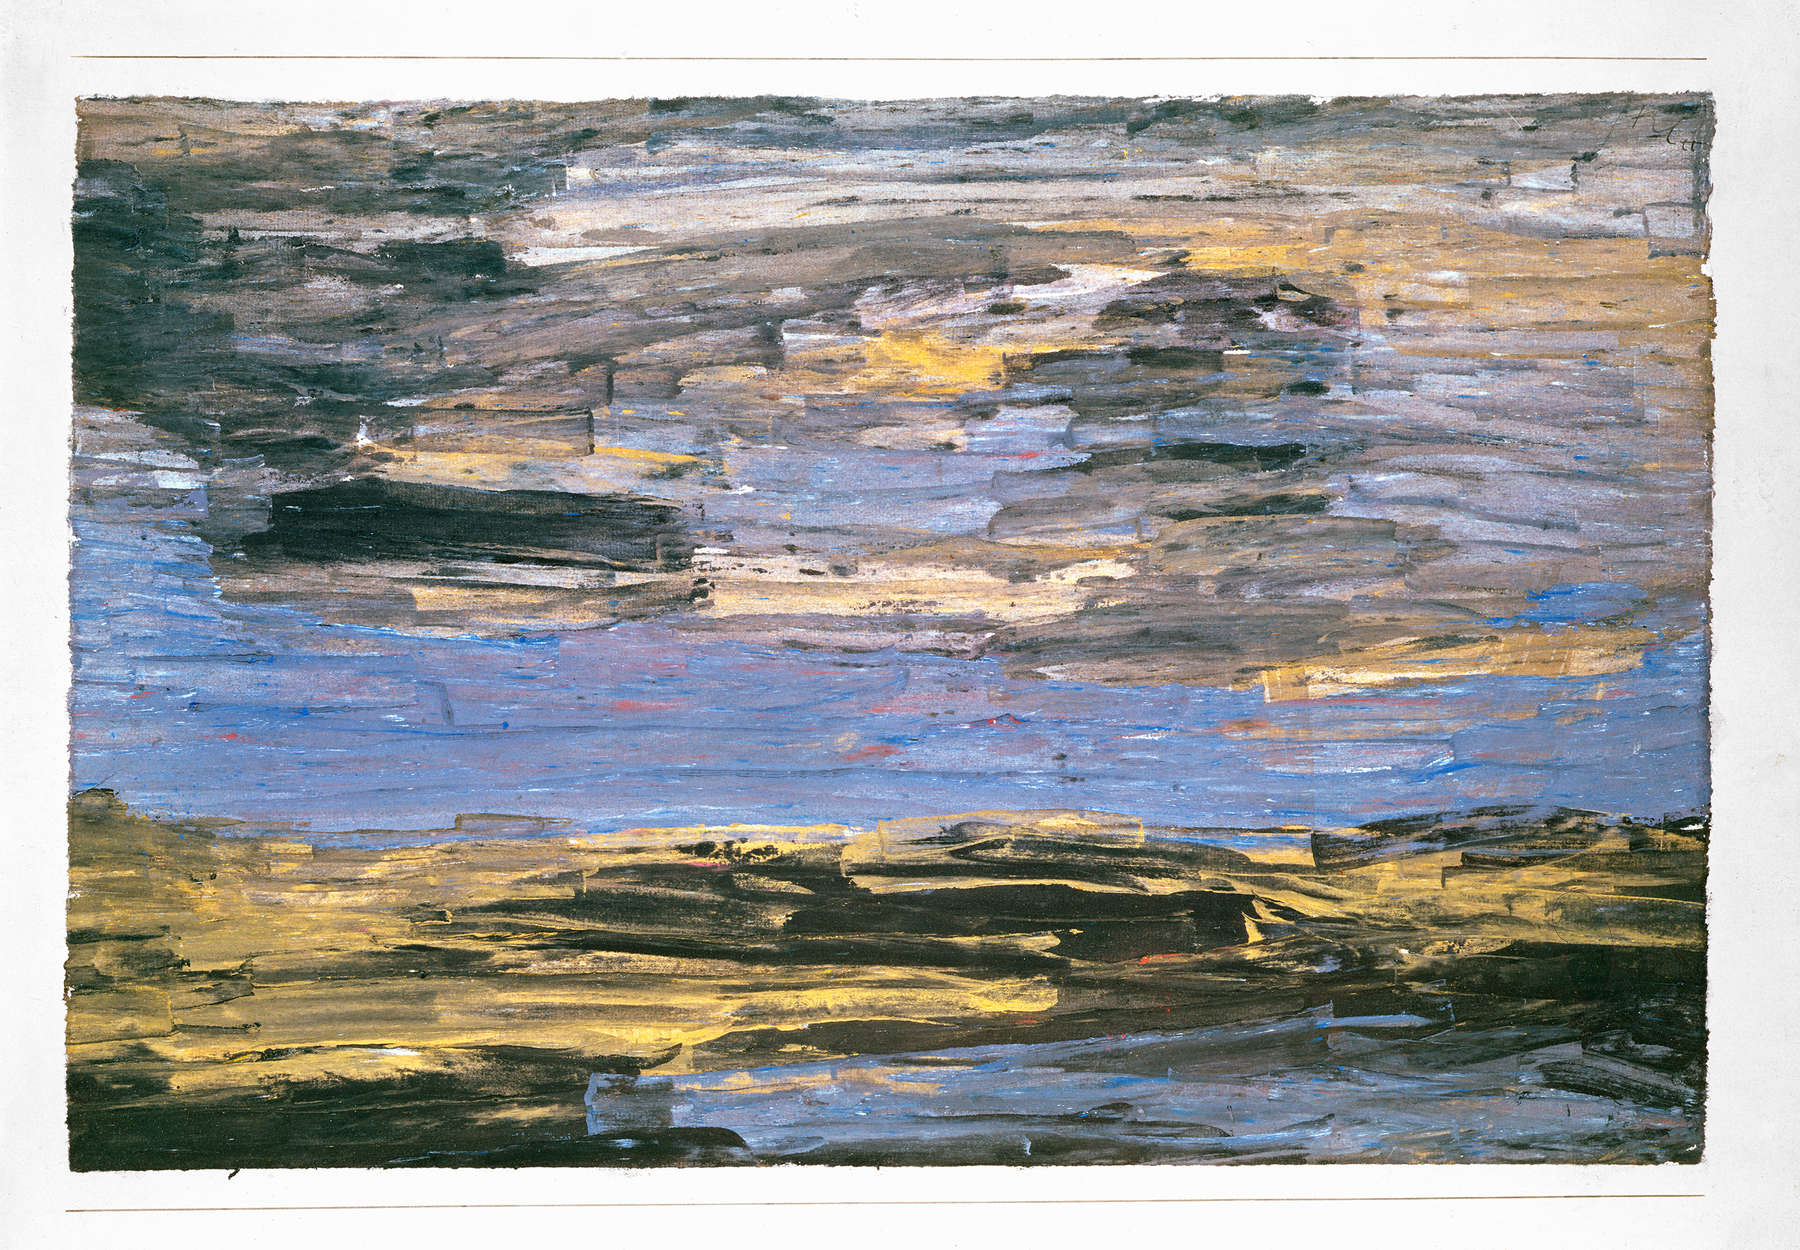             Fotomurali "Tempesta sulla pianura" di Paul Klee
        